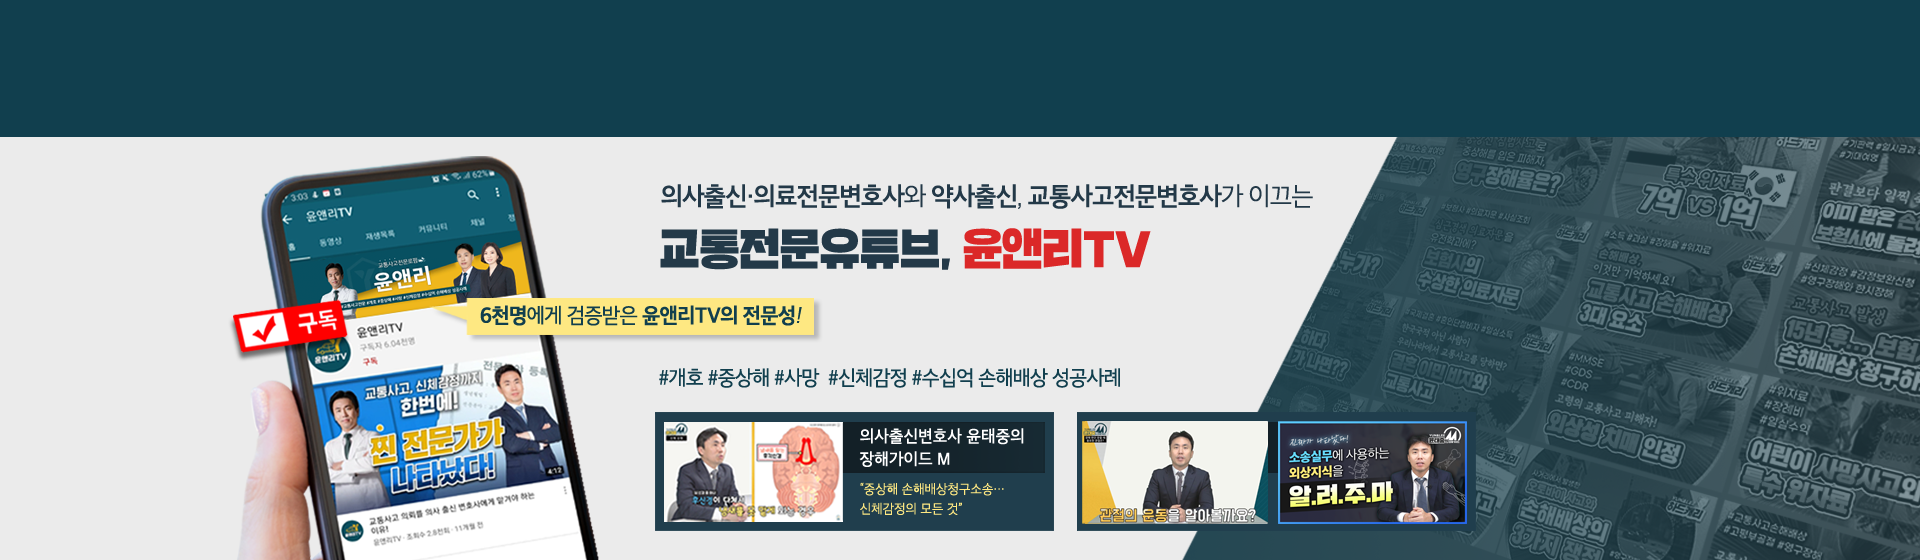 교통사고전문변호사 - 윤앤리TV